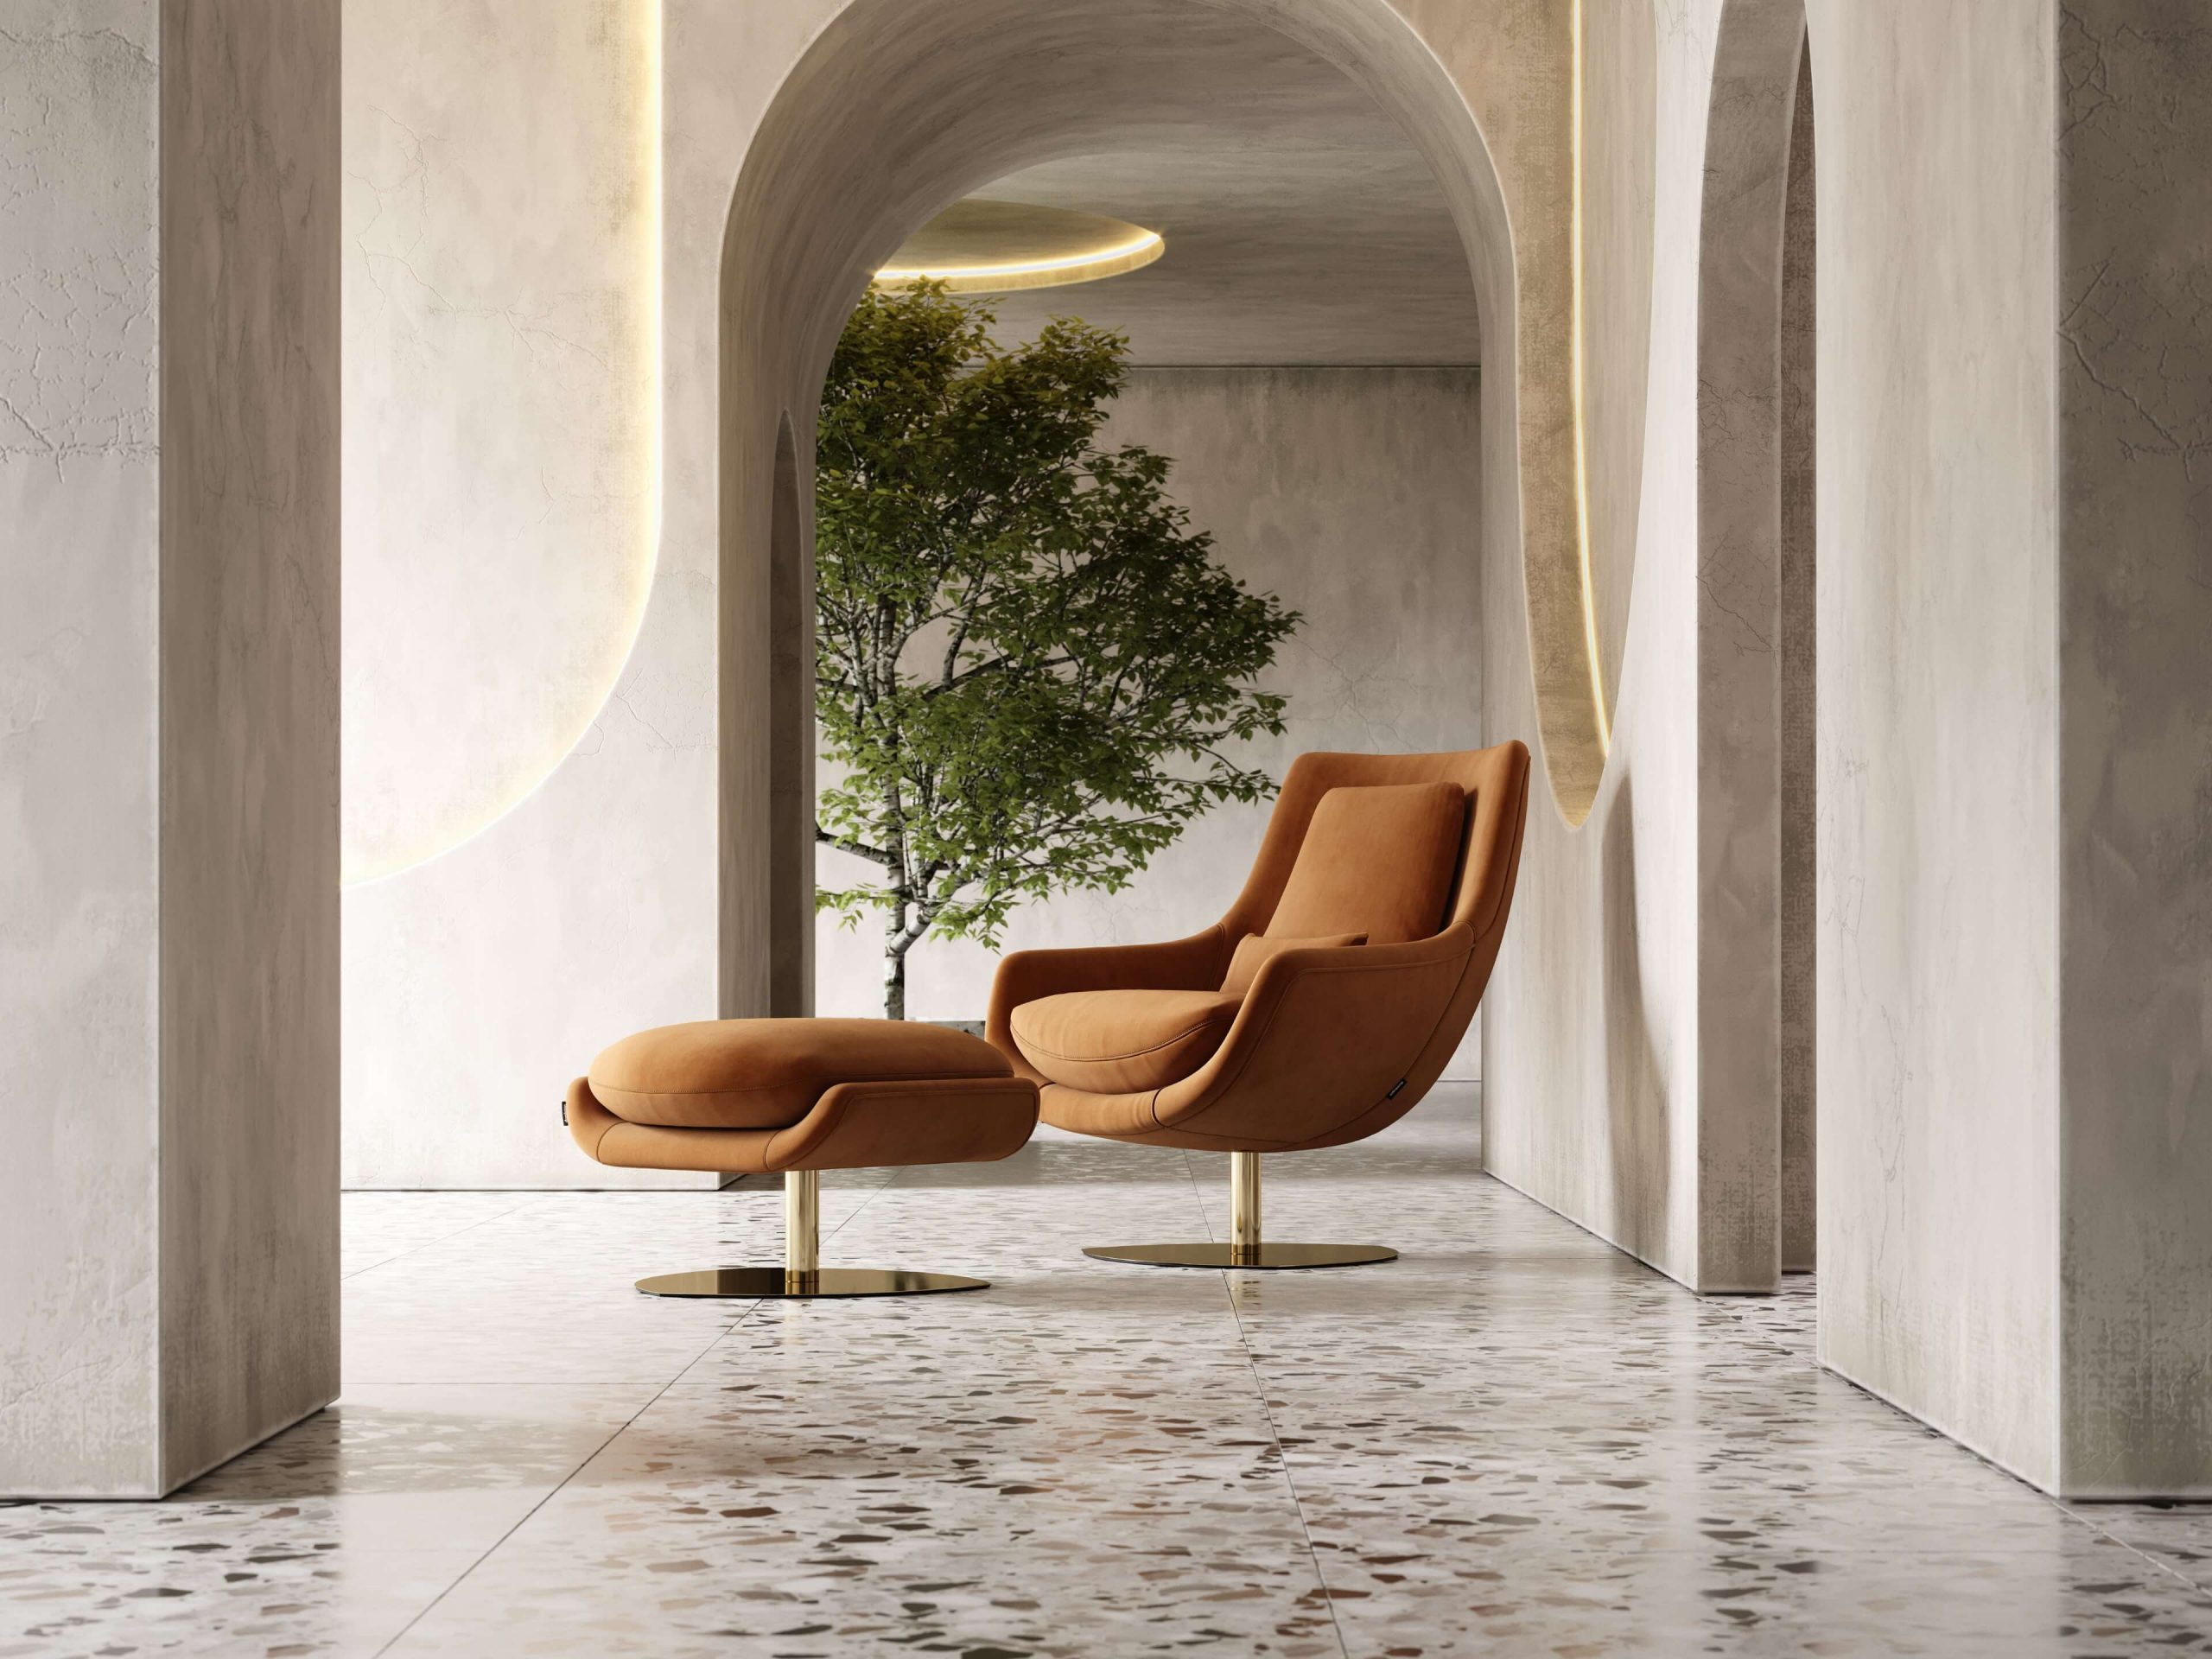 Elba-armchair-cotton-velvet-upholstered-furniture-living-room-interior-design-domkapa-Gold-stainless-steel-7